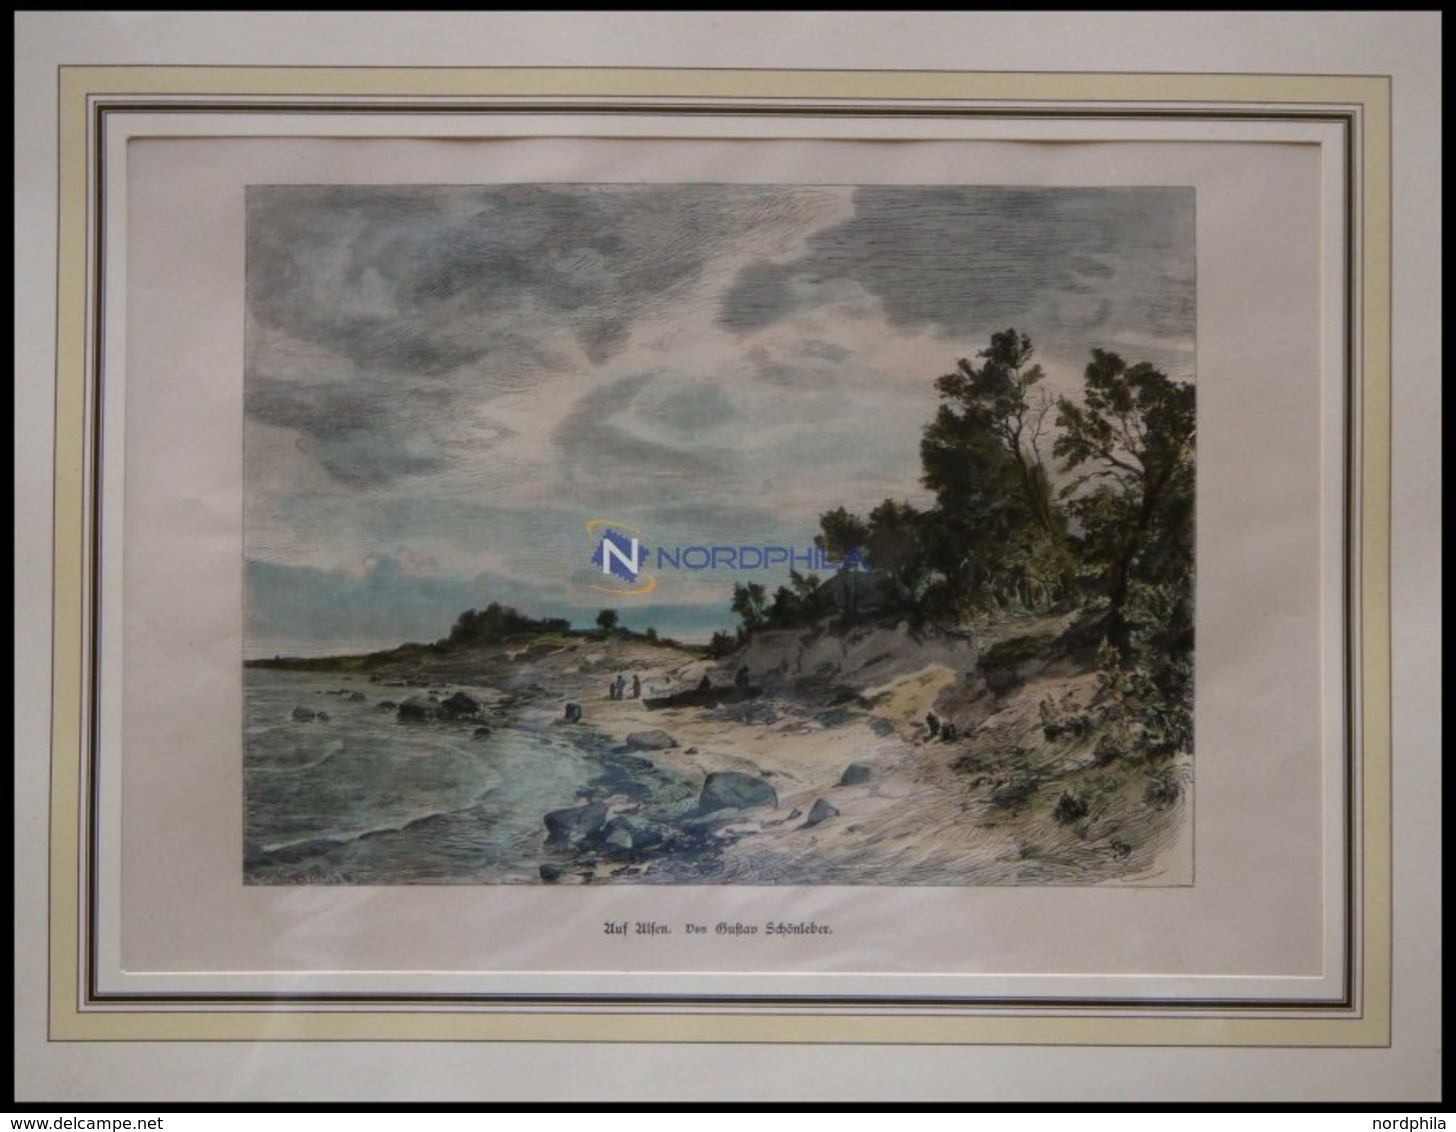 ALSEN, Am Strand, Kolorierter Holzstich Von G.Schönleber Von 1881 - Lithographien